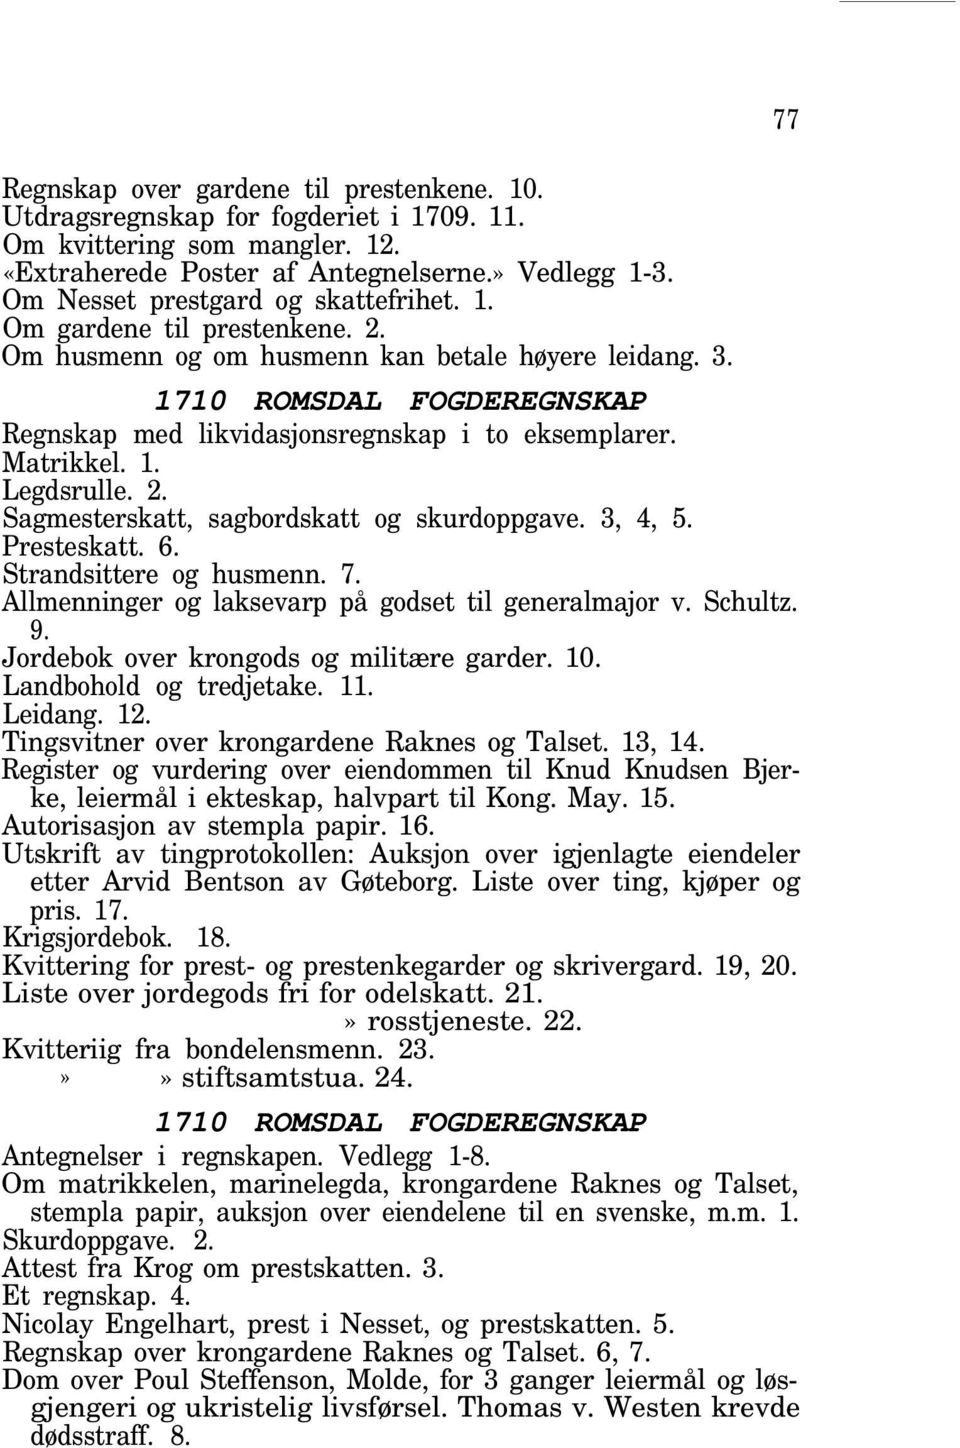 1710 ROMSDAL FOGDEREGNSKAP Regnskap med likvidasjonsregnskap i to eksemplarer. Legdsrulle. 2. Sagmesterskatt, sagbordskatt og skurdoppgave. 3, 4, 5. Presteskatt. 6. Strandsittere og husmenn. 7.